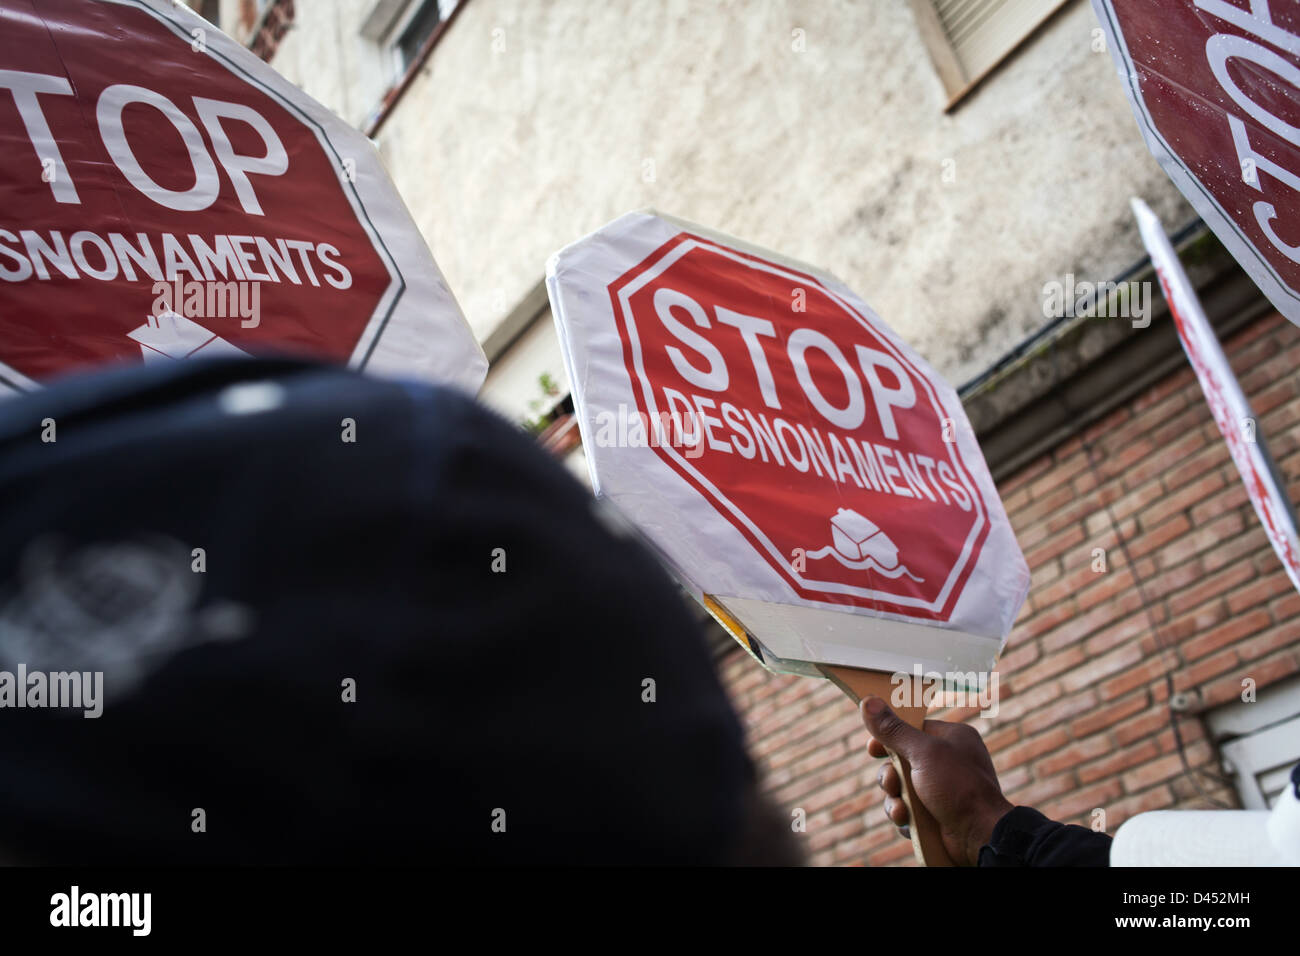 Carteles de Stop Desahucios. Stop desnonaments, frente a un edificio a punto de ser desahuciado en Girona Stock Photo